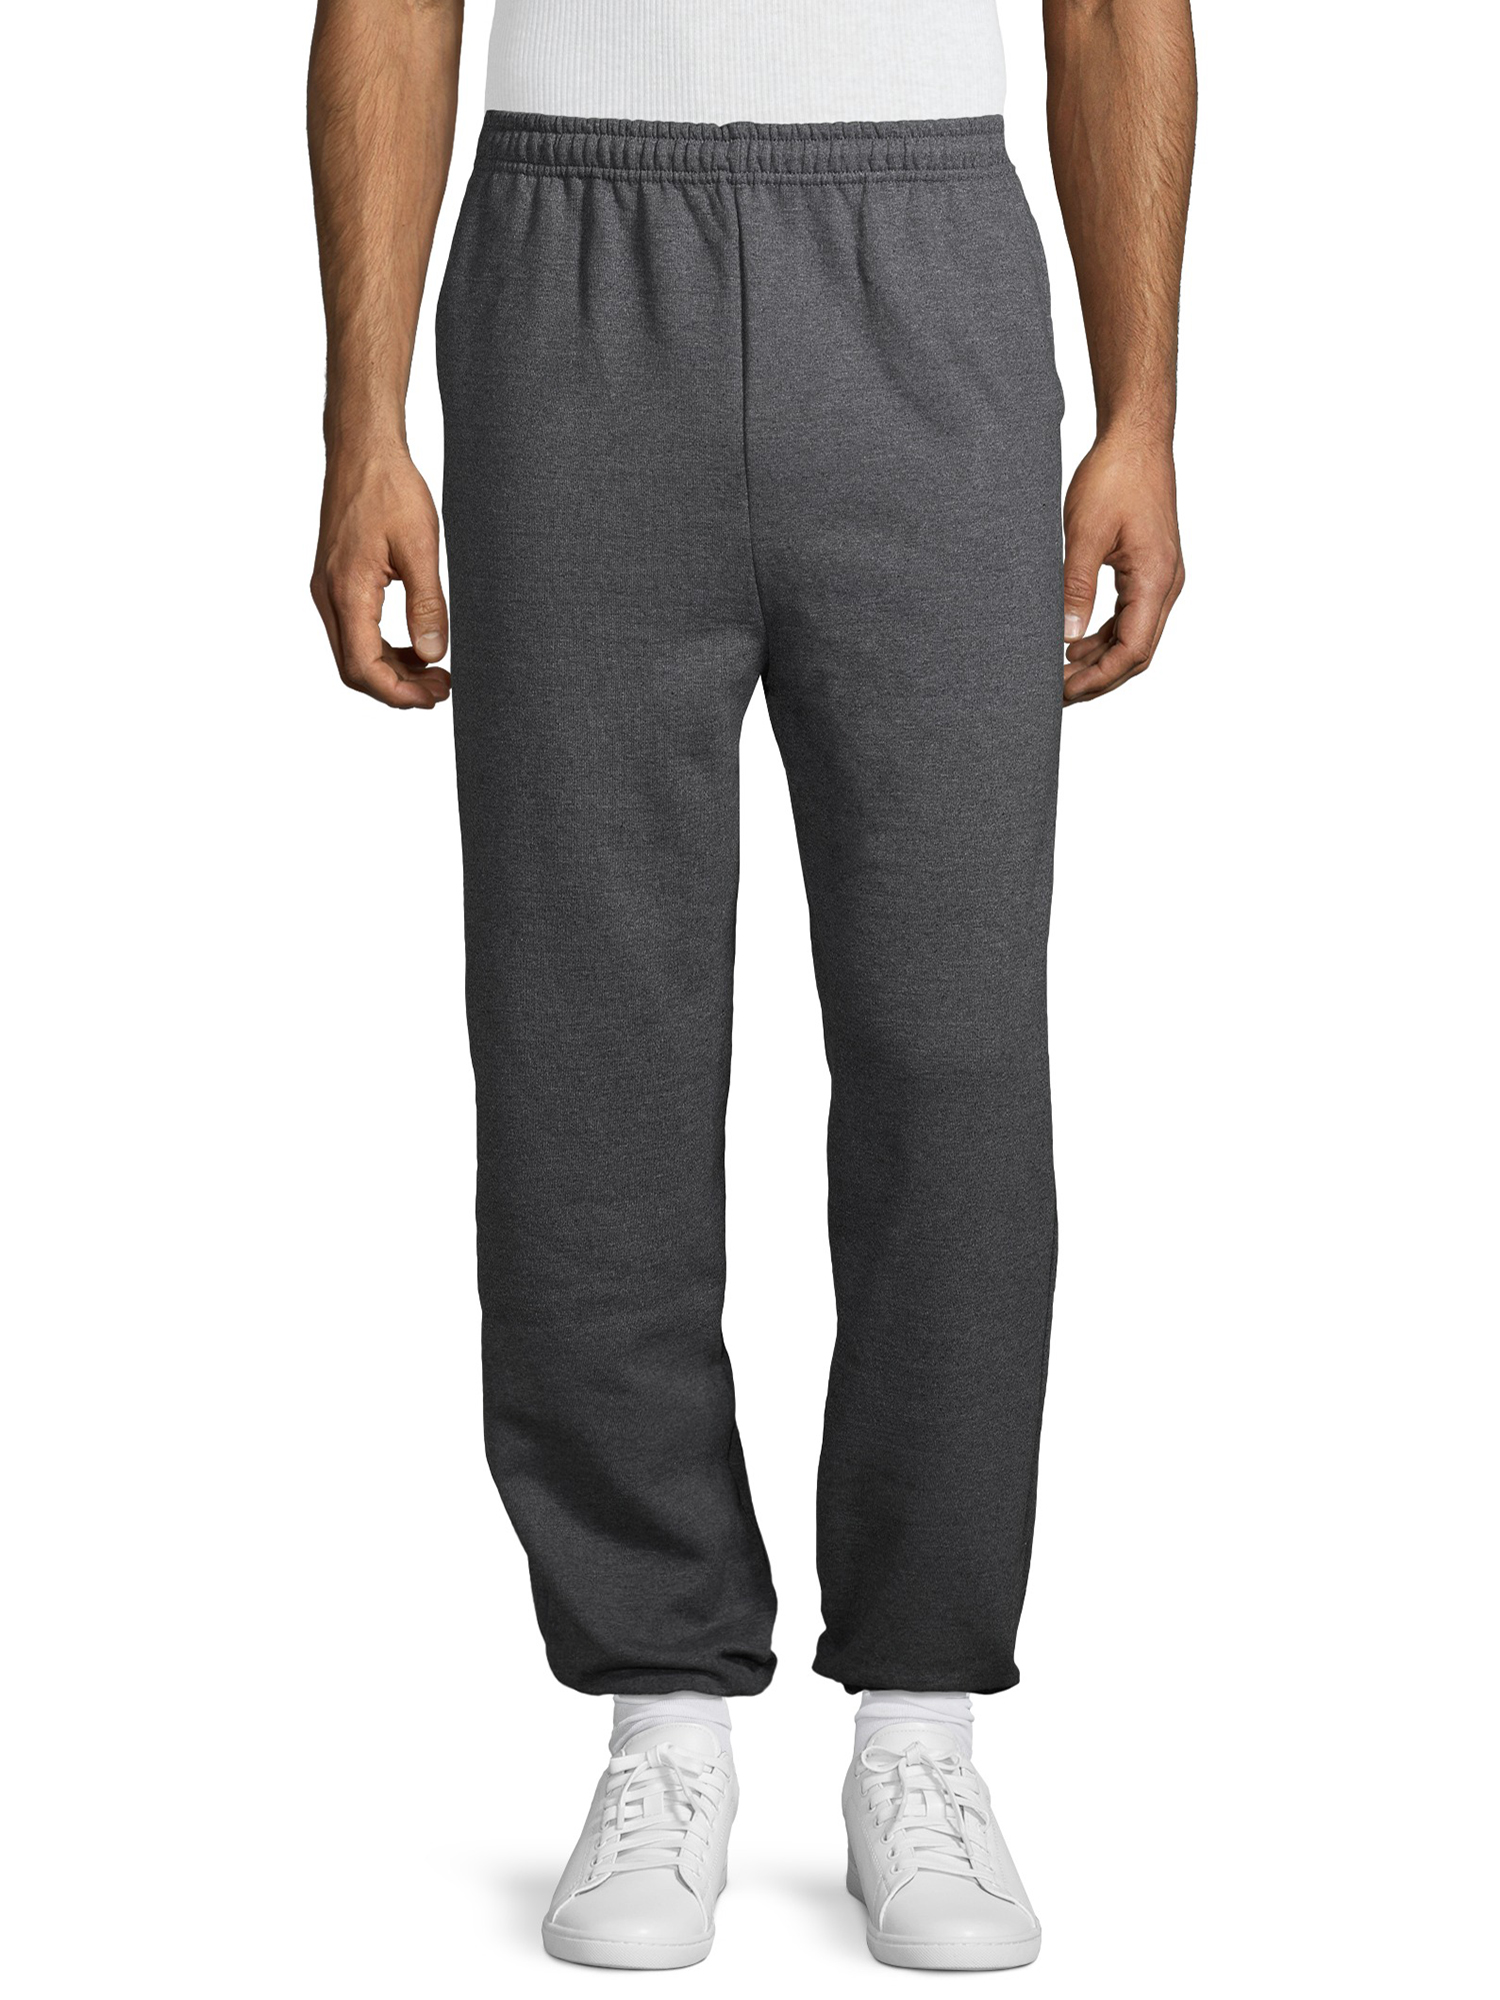 Gildan Men's Fleece Elastic Bottom Pocketed Sweatpants, up to Size 2XL - image 5 of 6